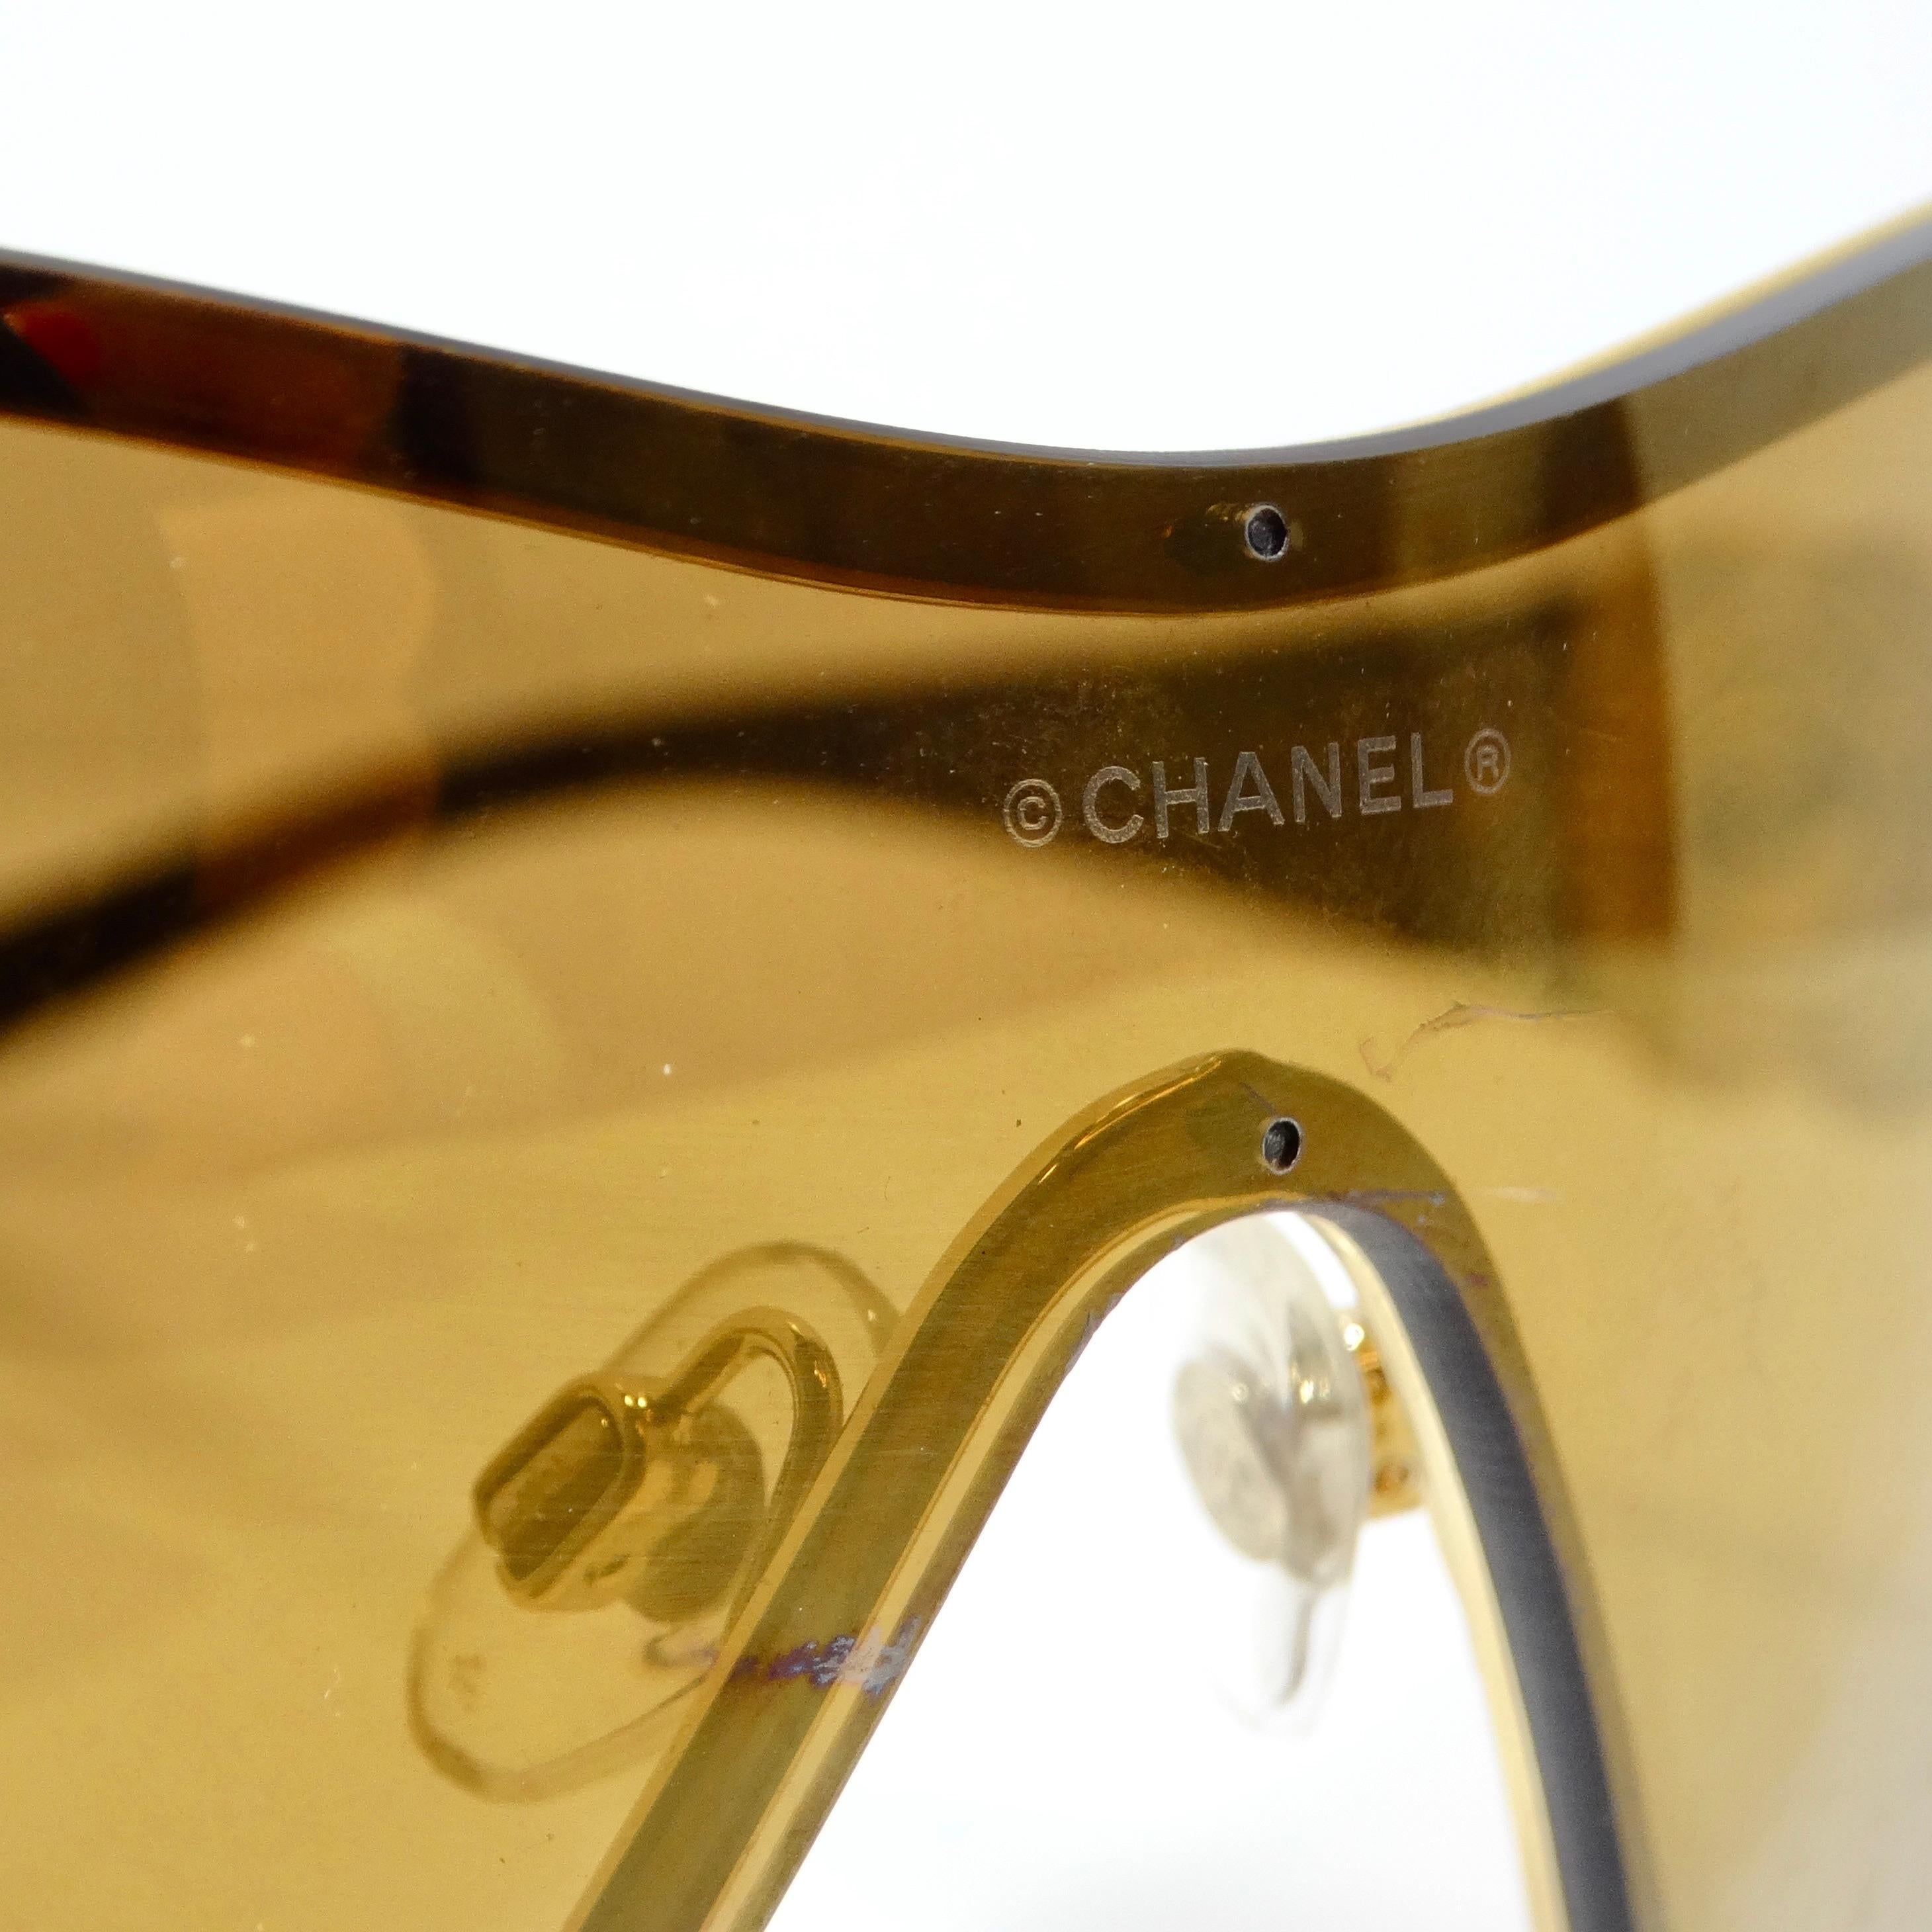 Die Chanel 1990s Gold Tone Camelia Shield Sonnenbrille ist eine bemerkenswerte Mischung aus zeitloser Eleganz und modernem Flair. Diese mit viel Liebe zum Detail gefertigte Sonnenbrille im Schildform-Stil strahlt Raffinesse und Luxus aus.

Die